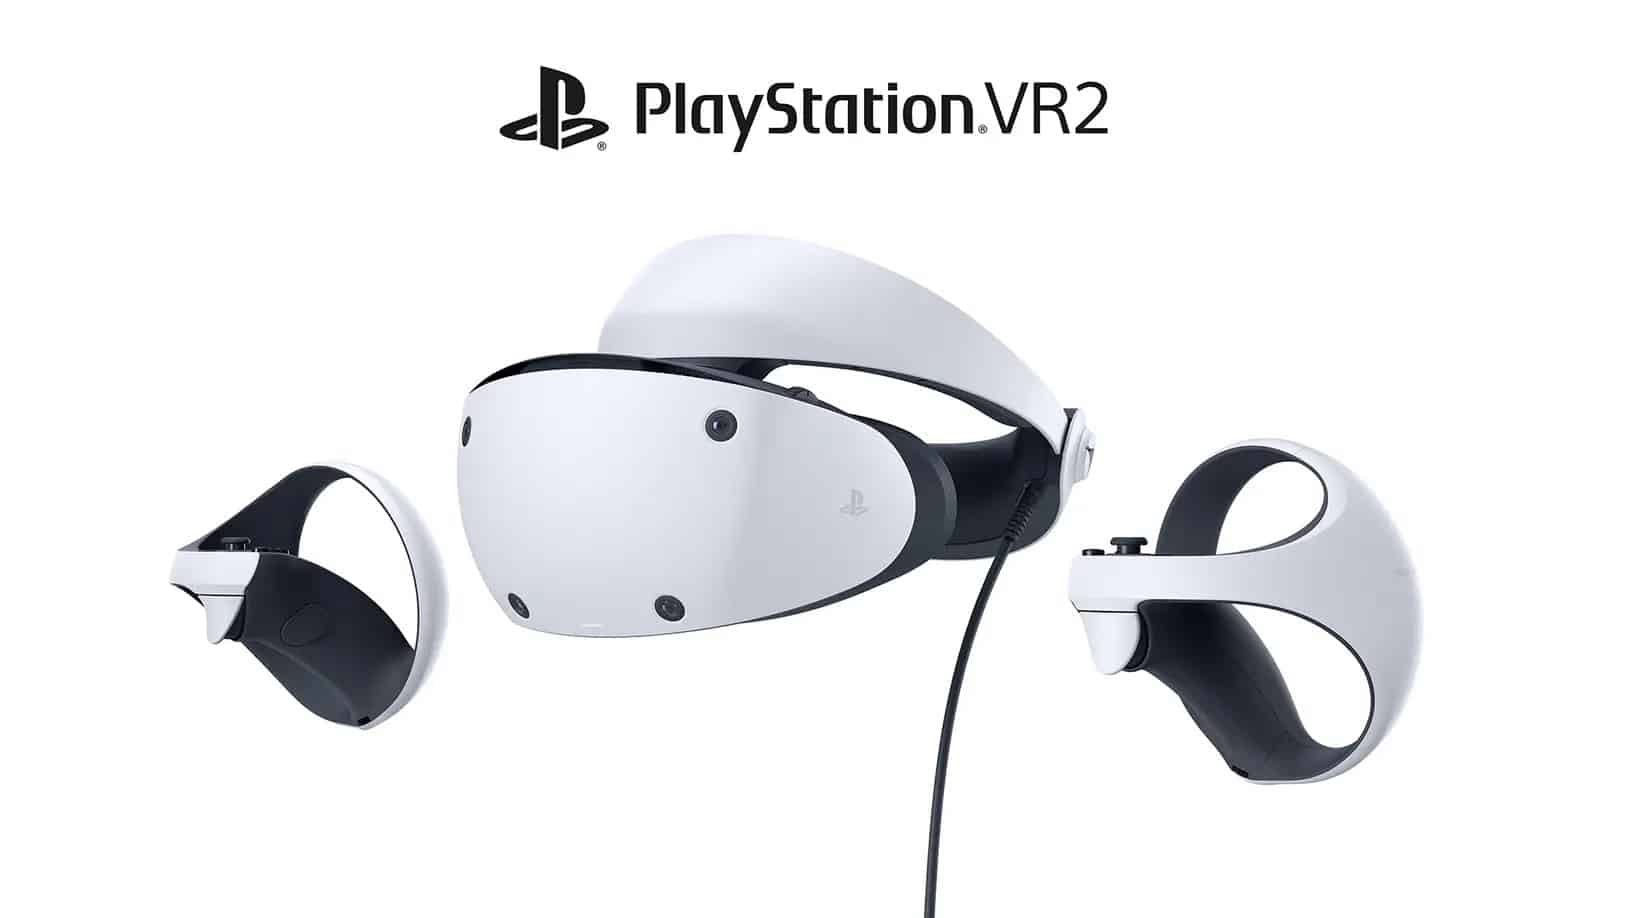 Sony revela design do novo psvr 2 | 8e8e5ee1 playvr | playstation, playstation 4, playstation 5, psvr, realidade virtual, vr | sony music e resso notícias